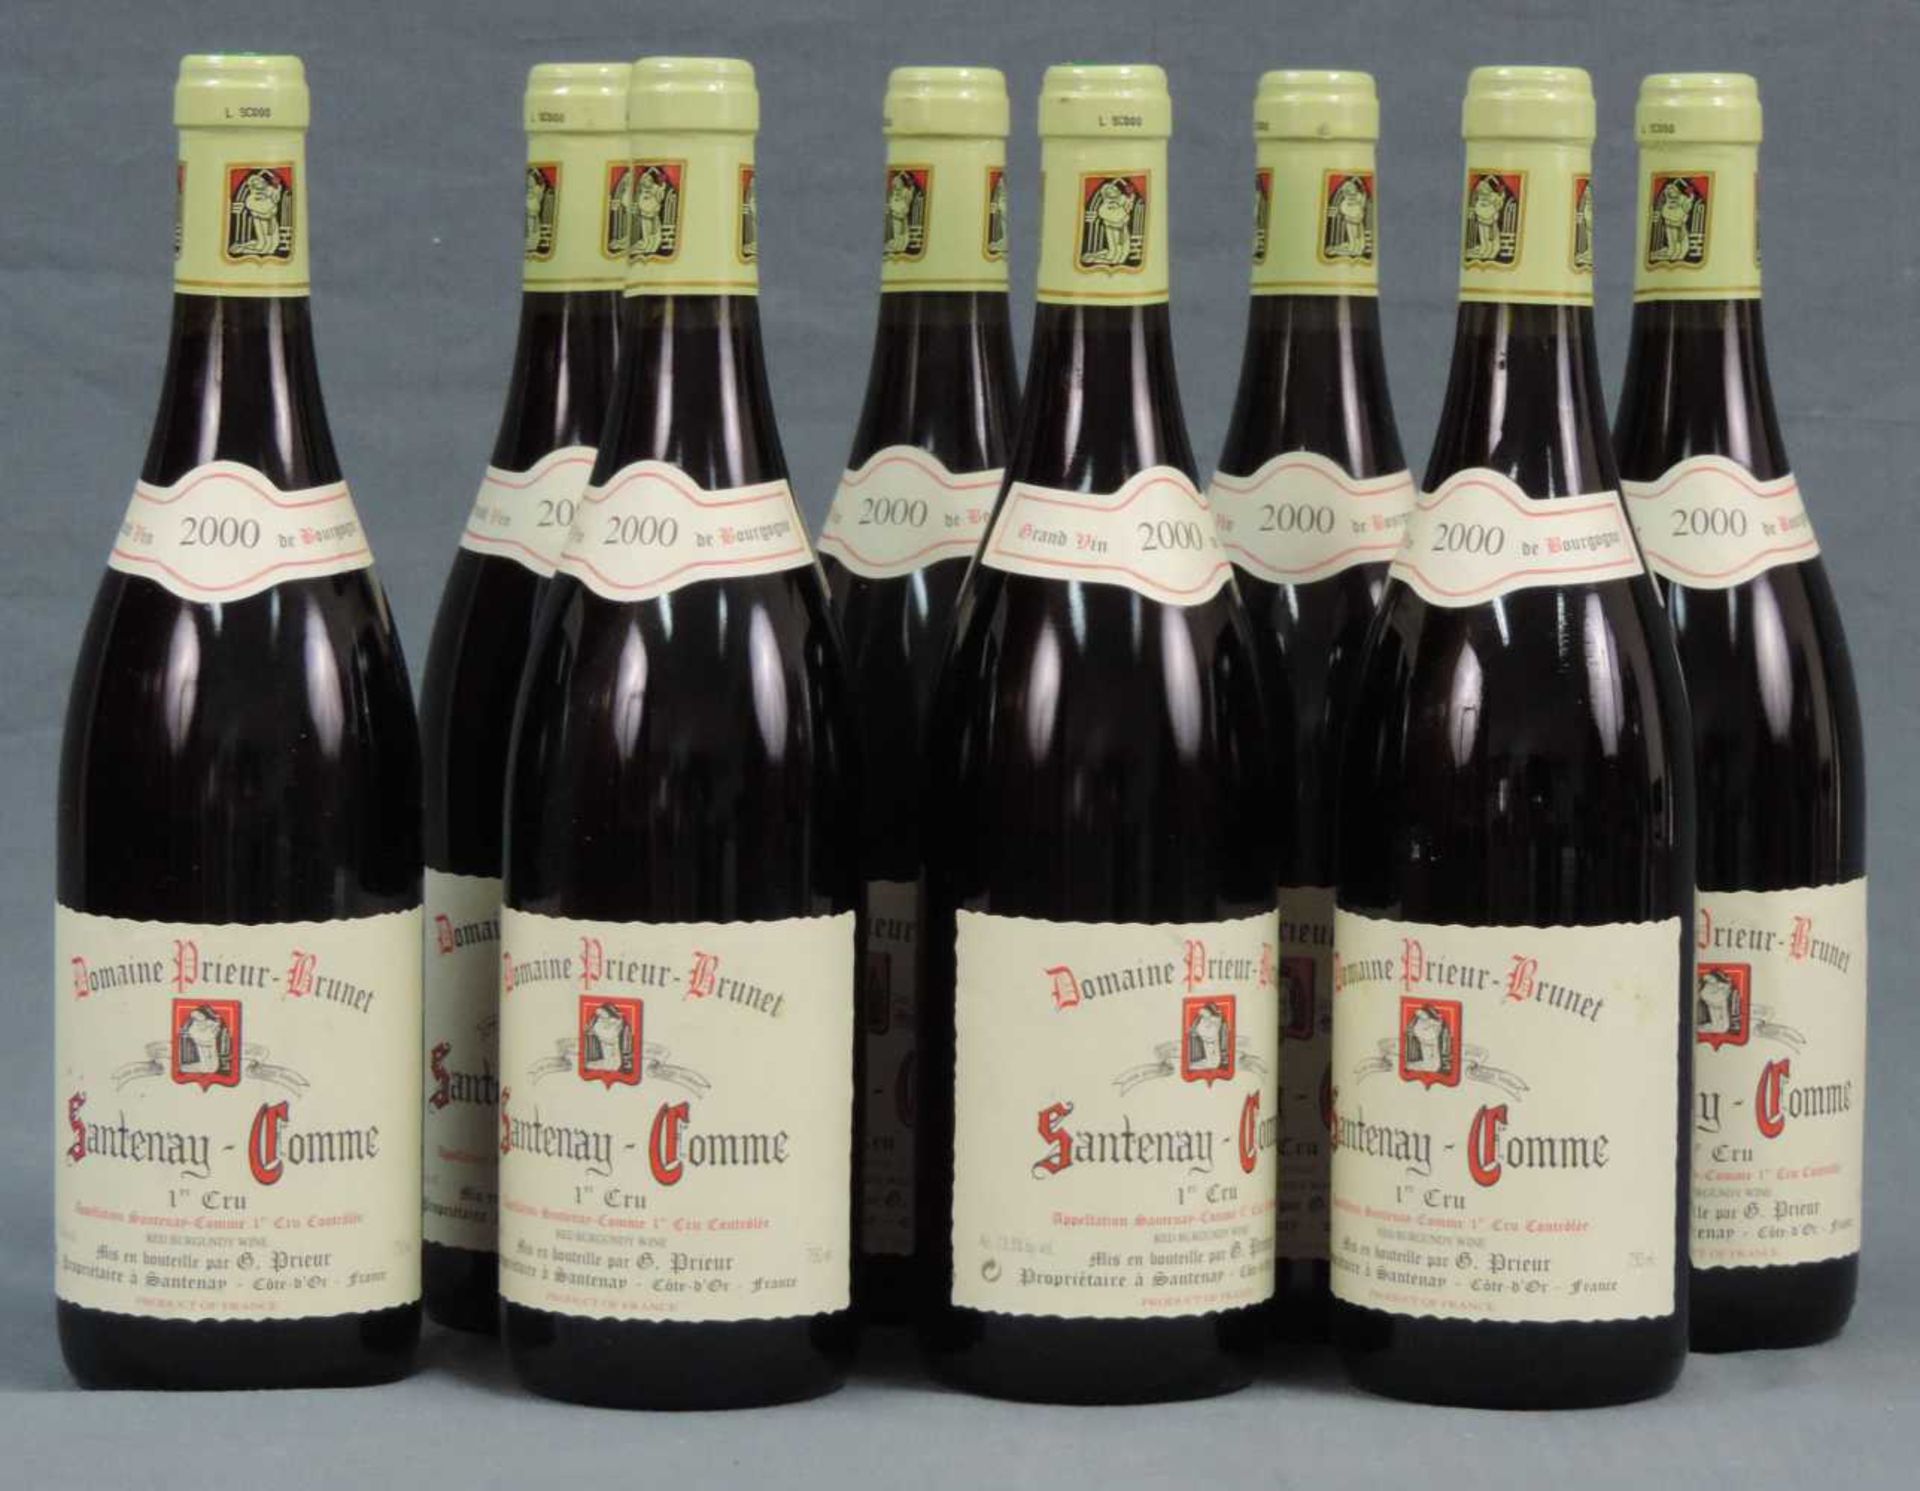 2000 Domaine Prieur - Brunet, Satenay Comme Premier Cru, France. 8 Flaschen, 750 ml, Alc., 13,5%